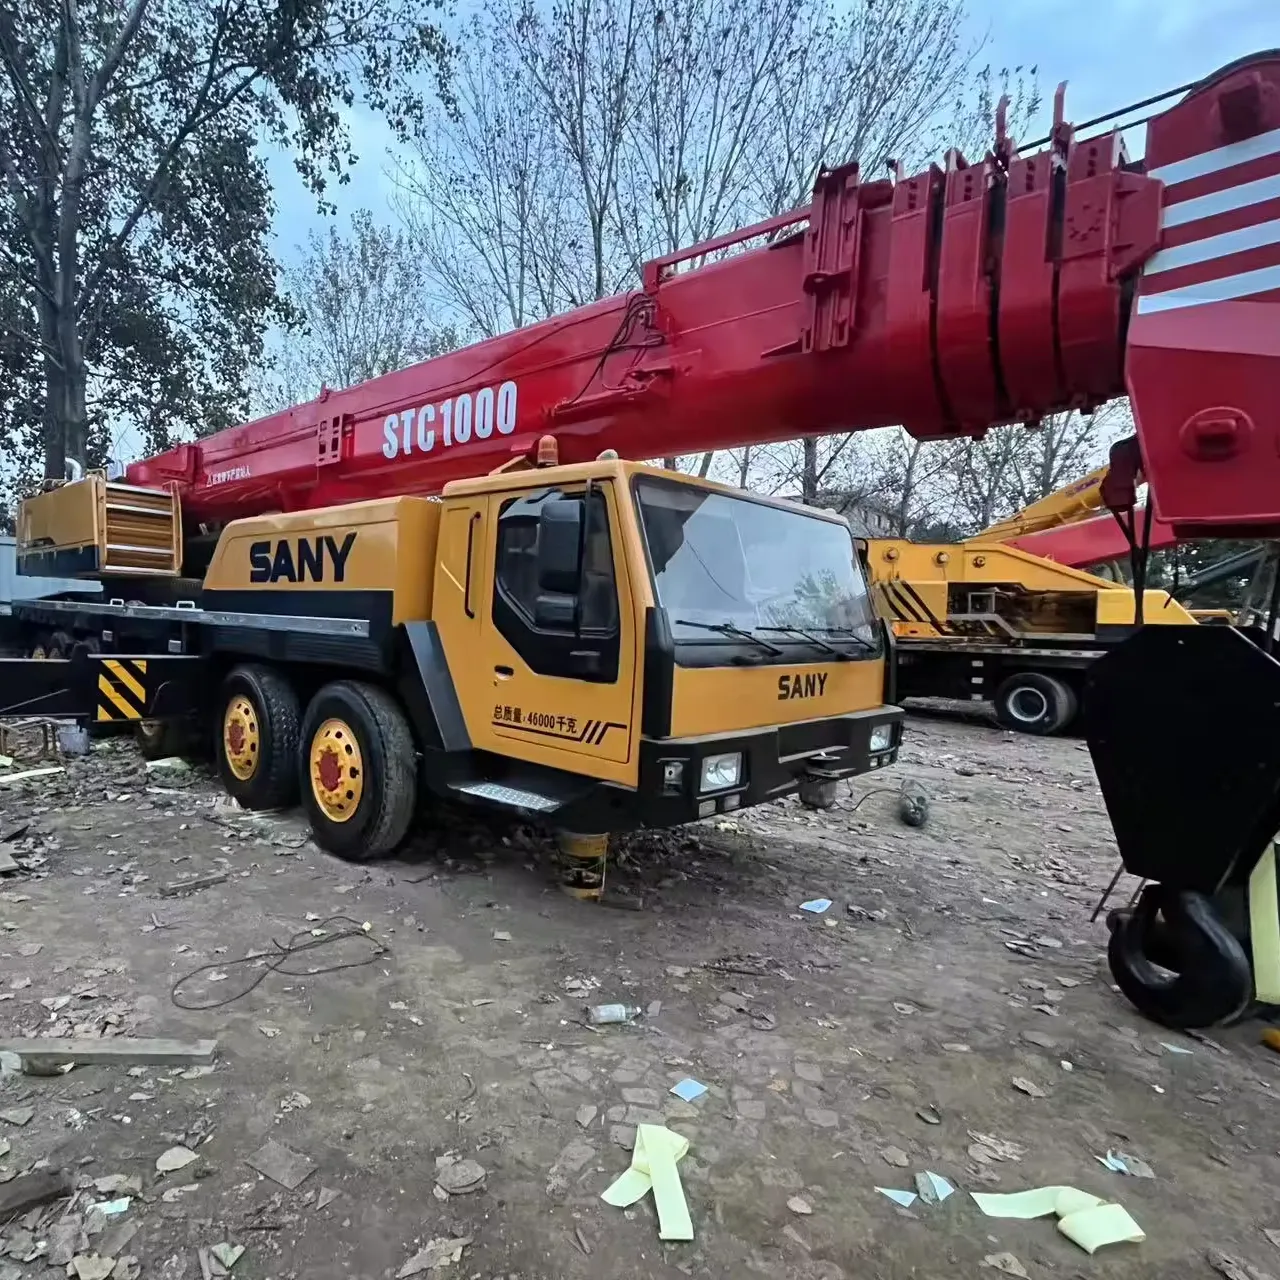 رافعة شاحنة مستعملة SANY STC1000 رافعة شاحنة 100 طن مستعملة للبيع رافعة 100 طن مستعملة من أفضل العلامات التجارية في الصين